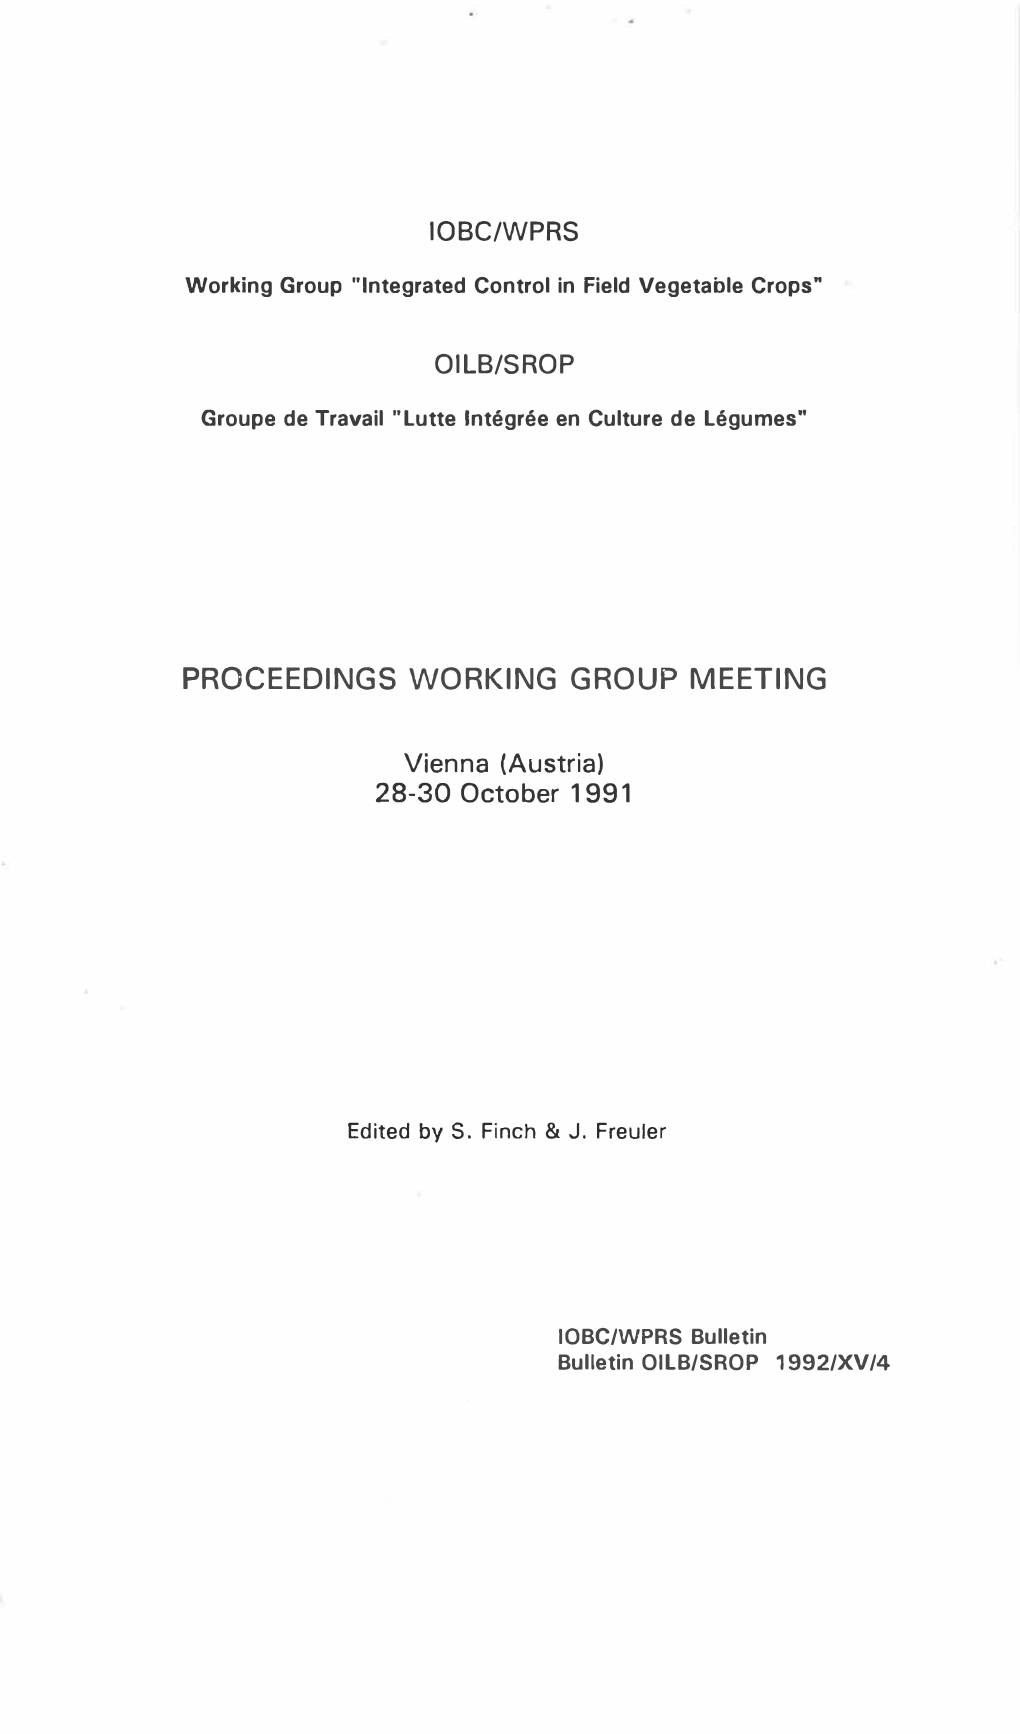 Proceedings Working Group Meeting